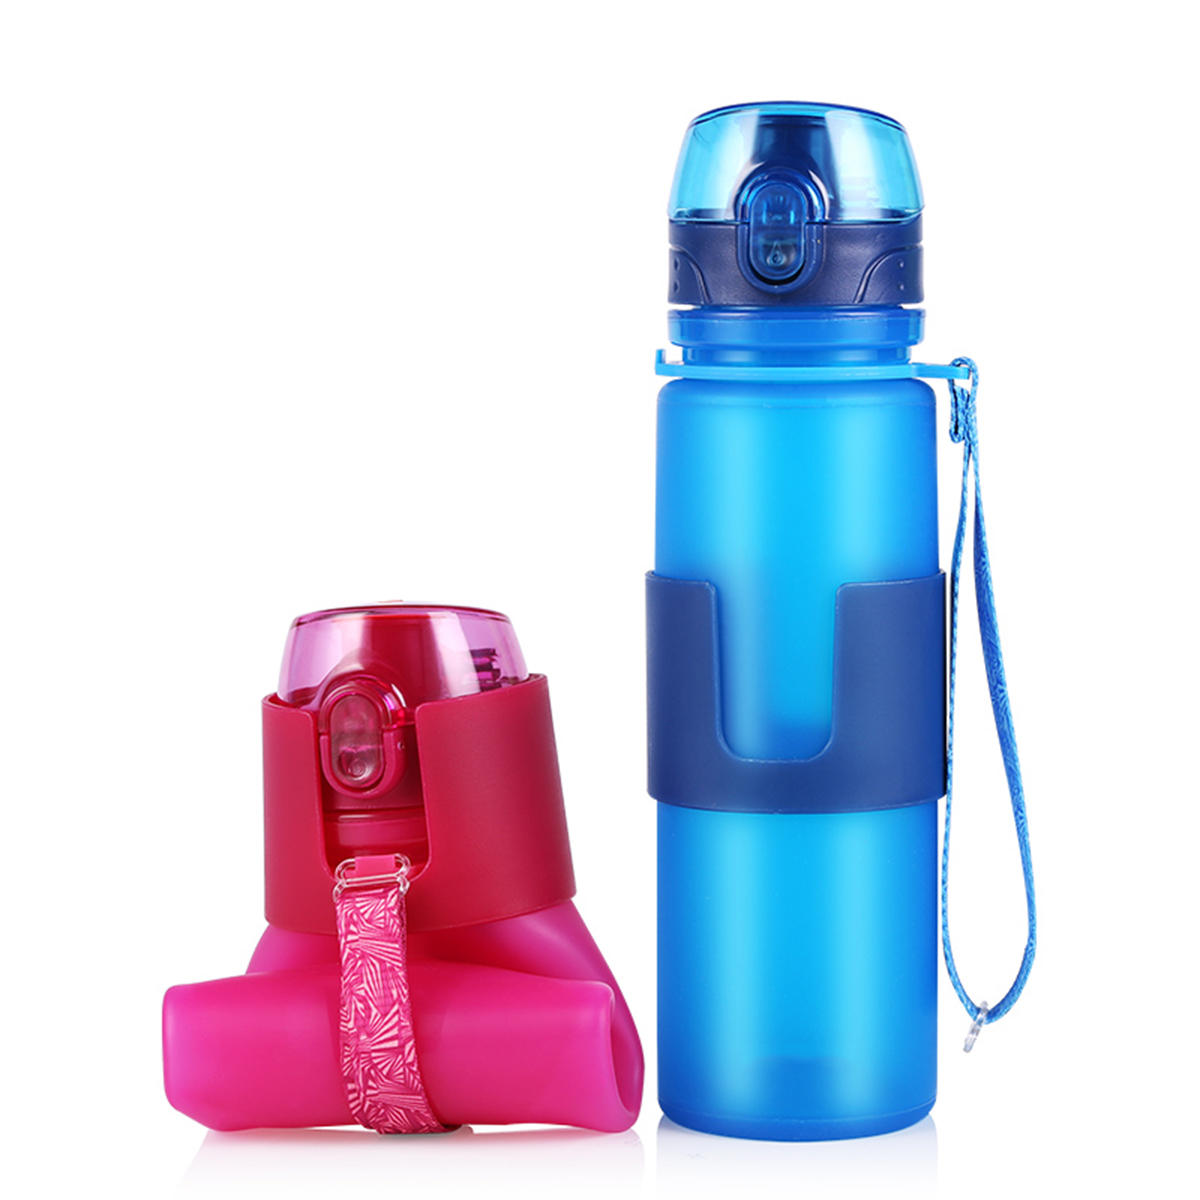 زجاجة ماء رياضية قابلة للطي من السيليكون سعة 650 مل لشرب الماء أثناء ممارسة اللياقة البدنية وركوب الدراجات والجري